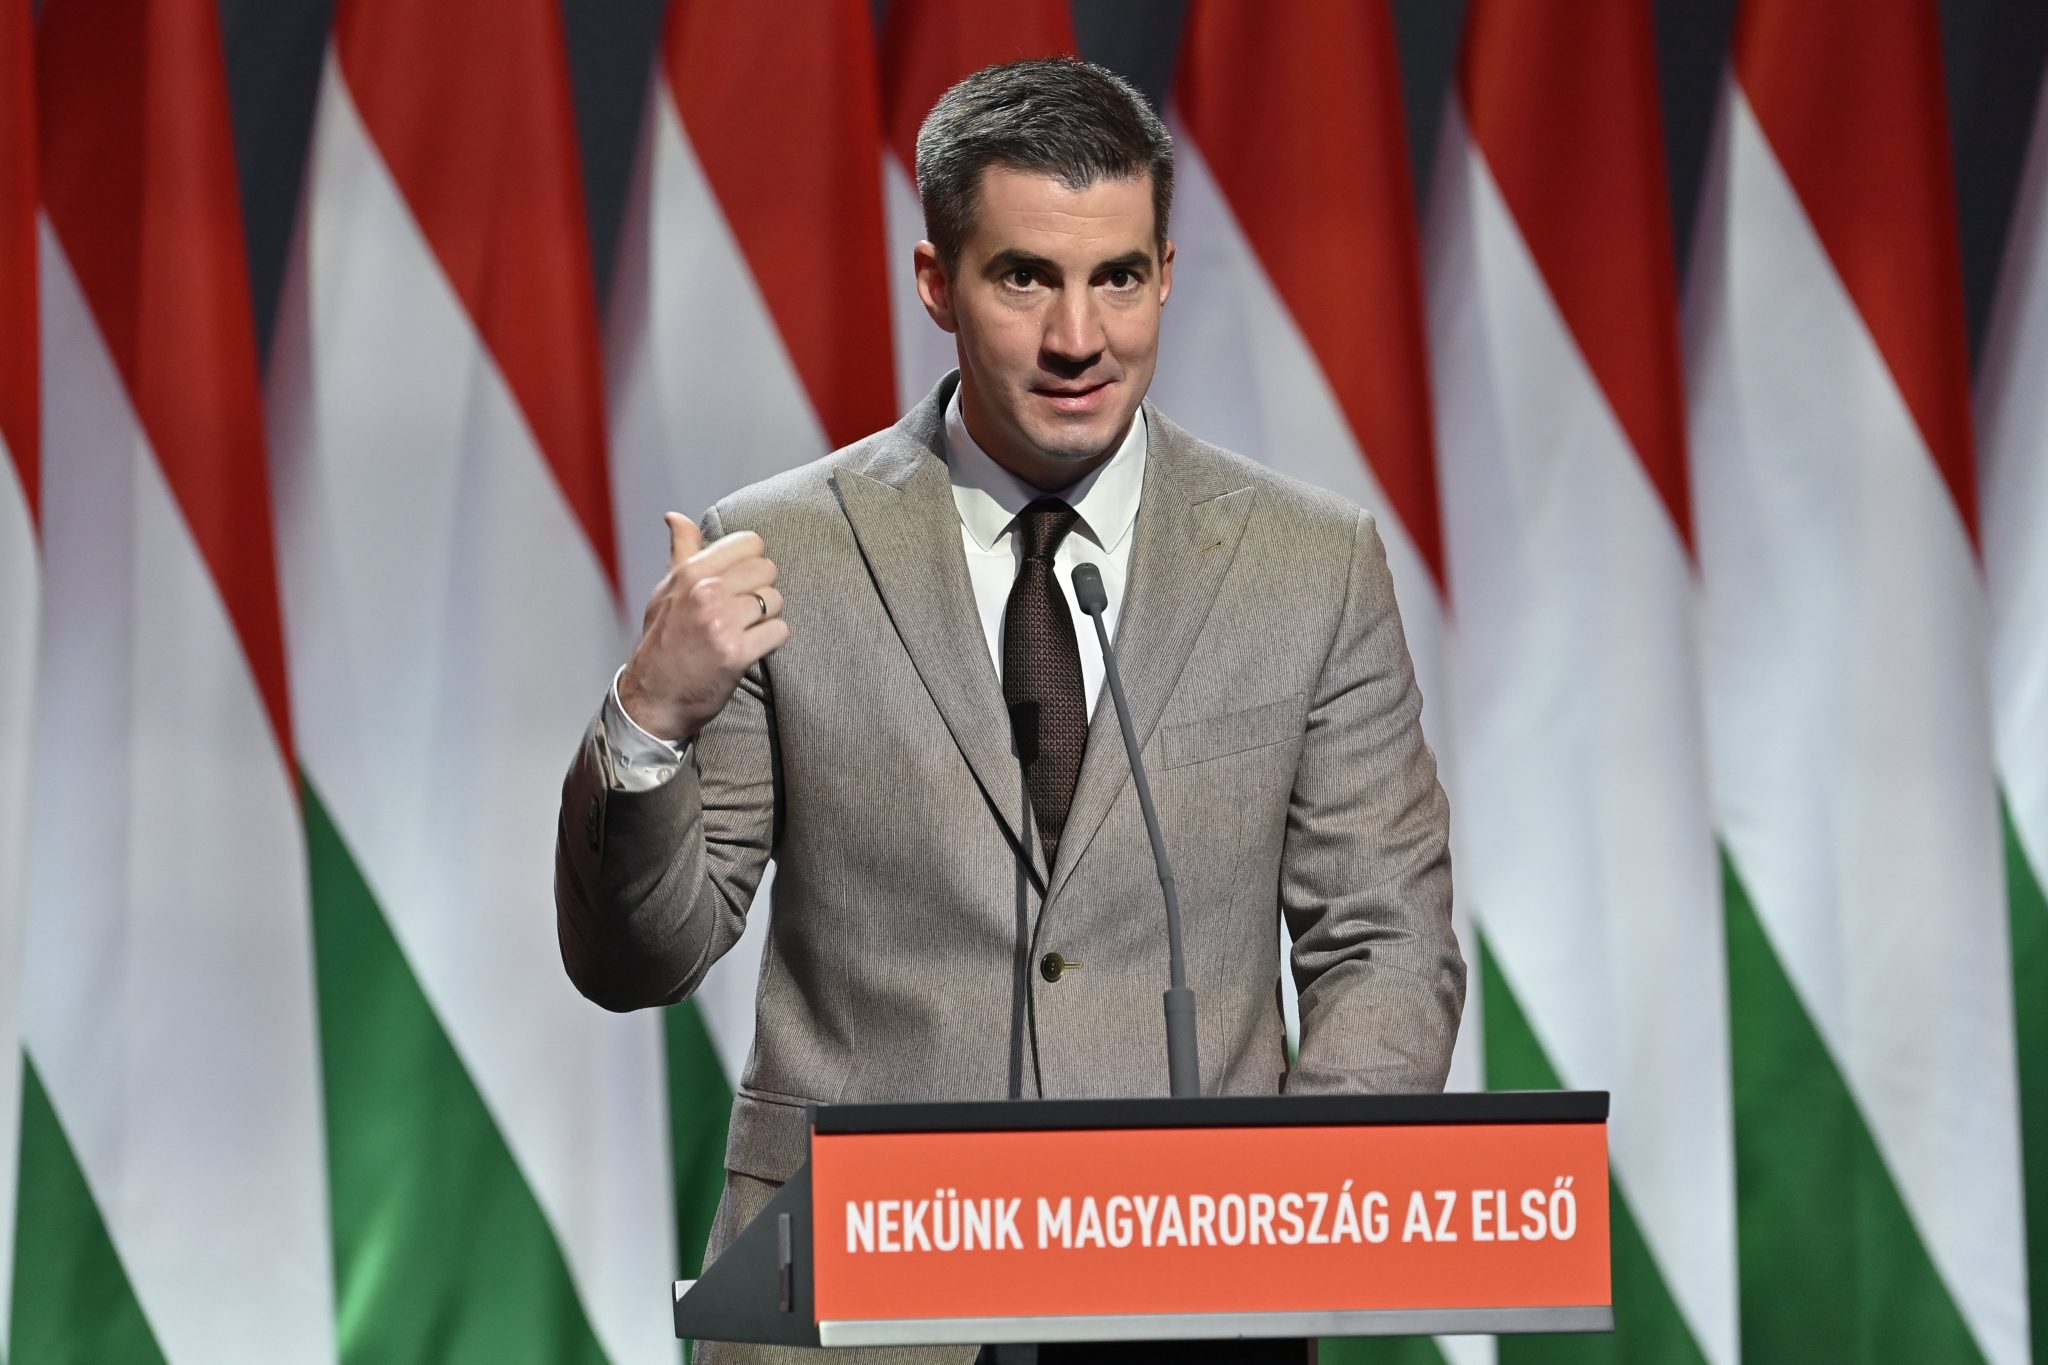 Vorsitzender der Fidesz-Fraktion: Krisen in allen Richtungen, nur Fidesz kann Frieden und wirtschaftliche Sicherheit bewahren